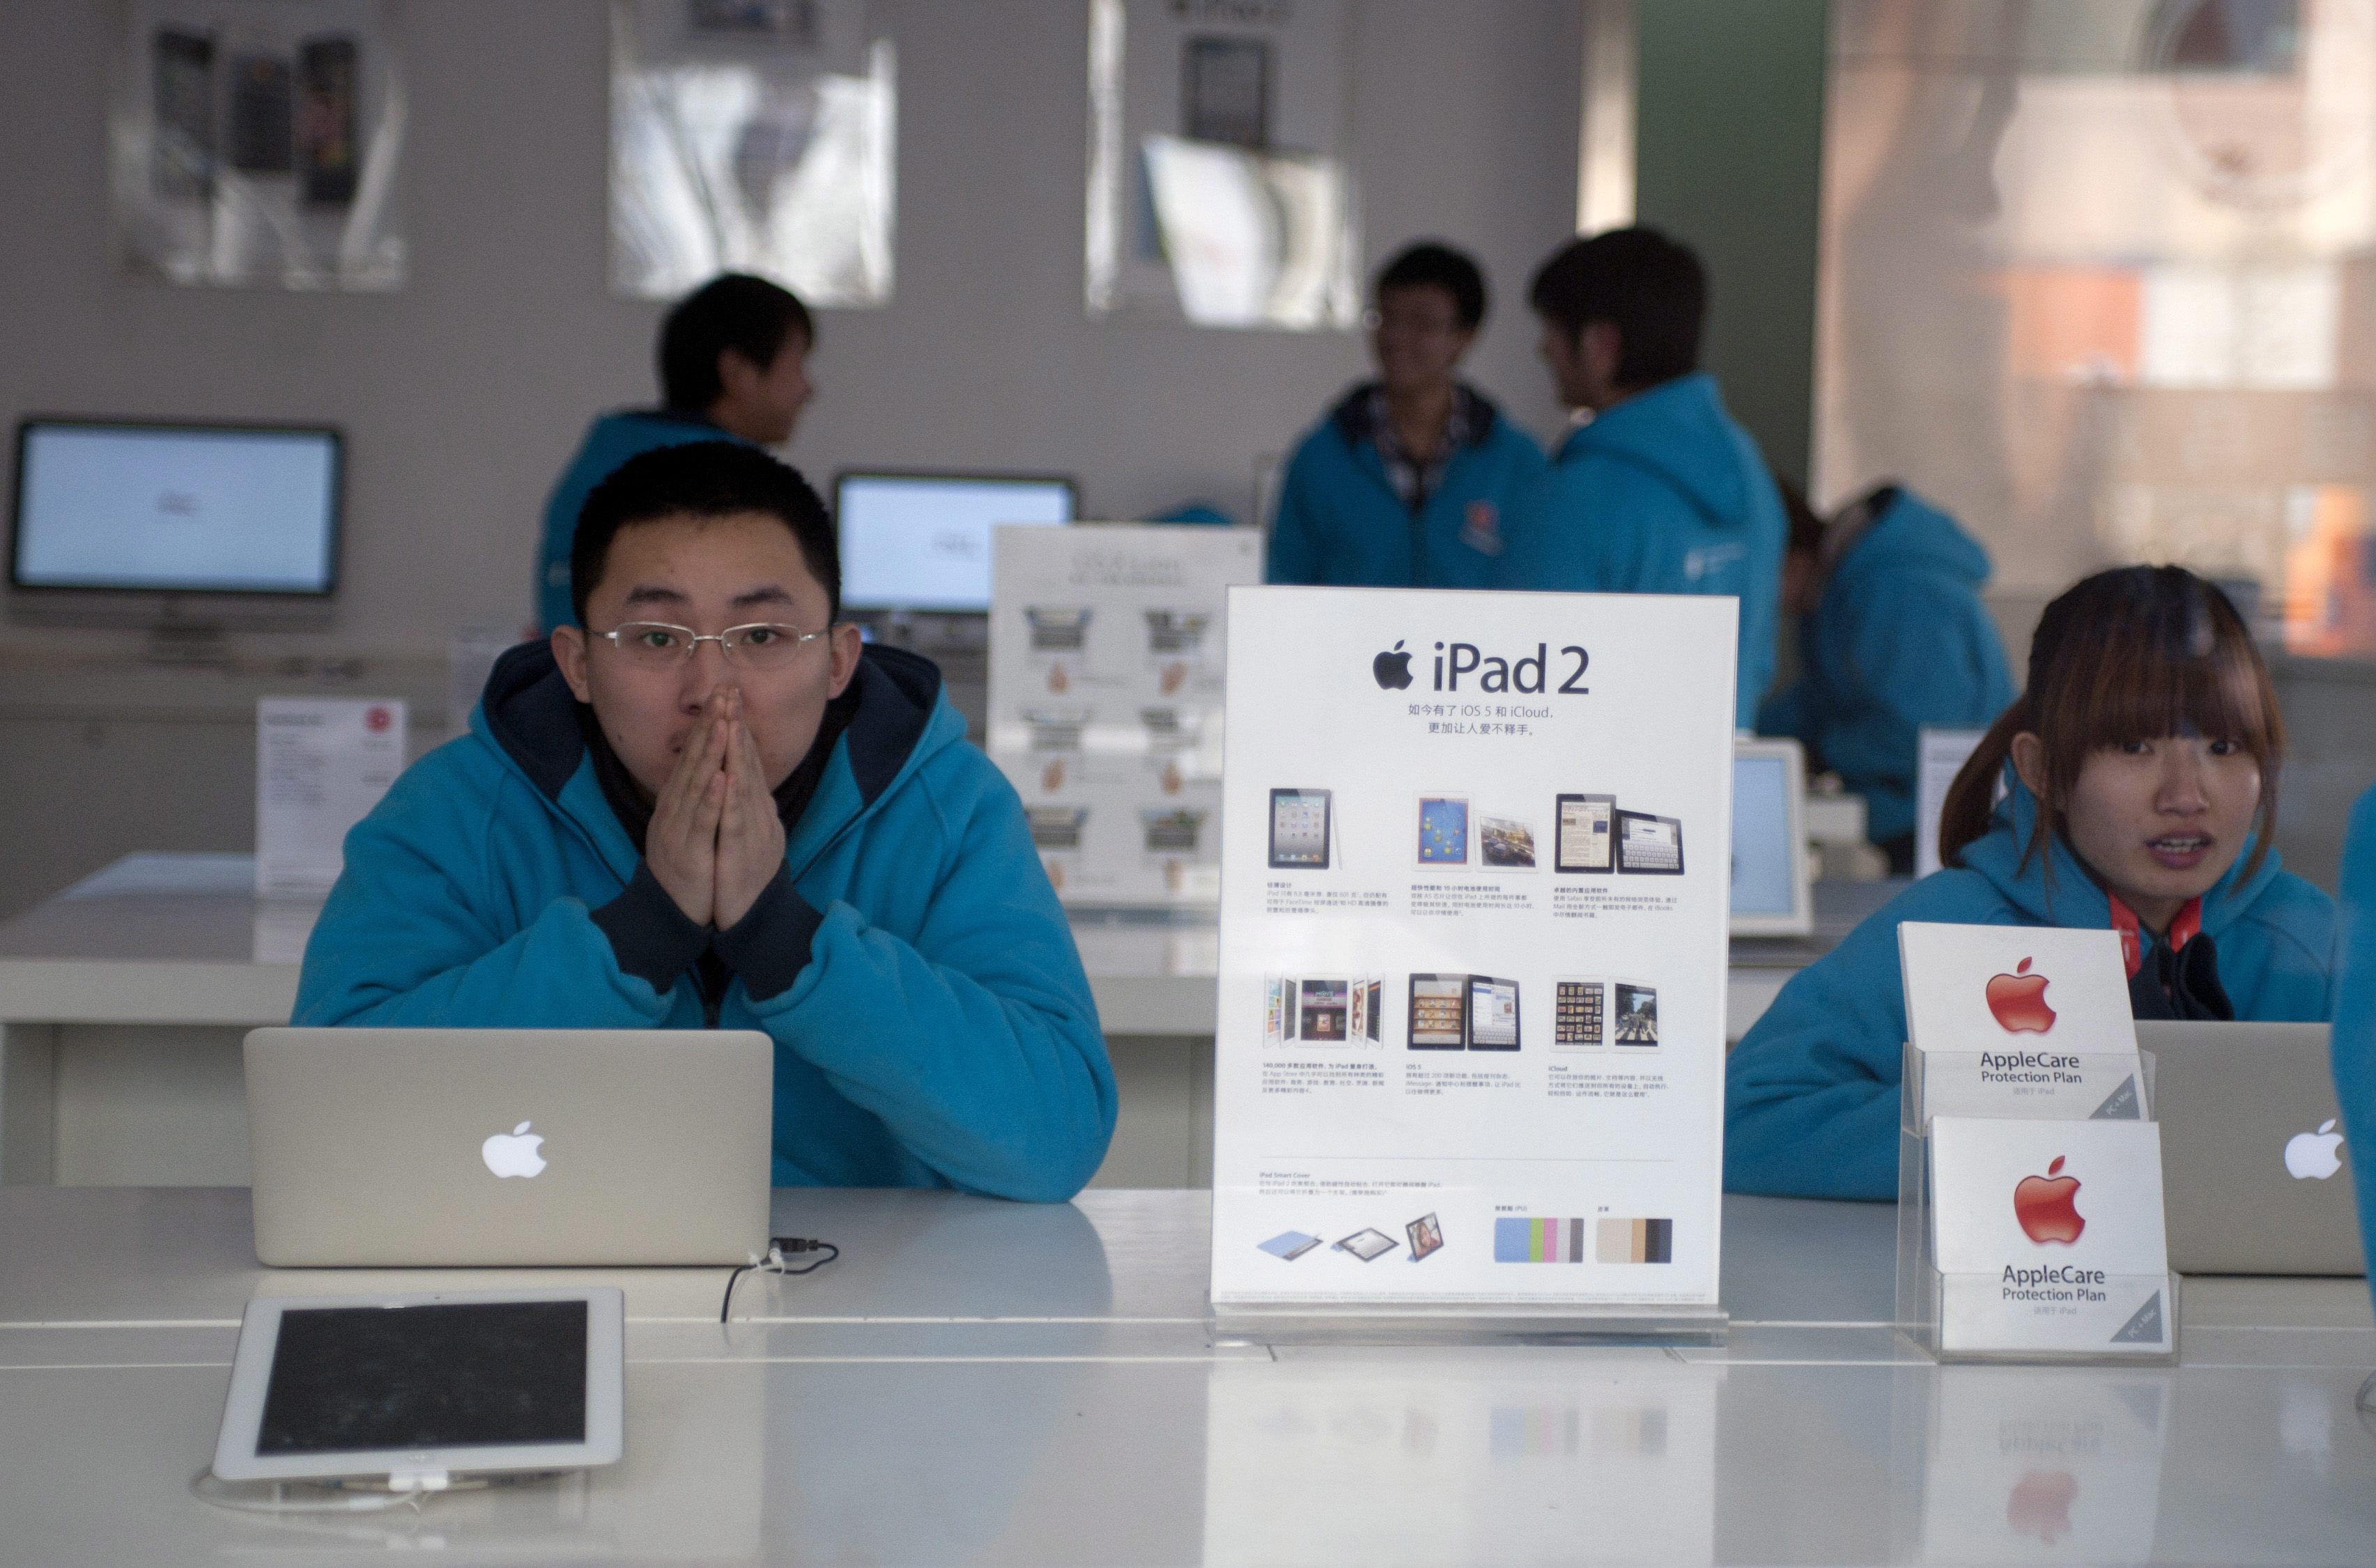 Proview твърди, че търговската марка ”iPad” в континентален Китай й принадлежи